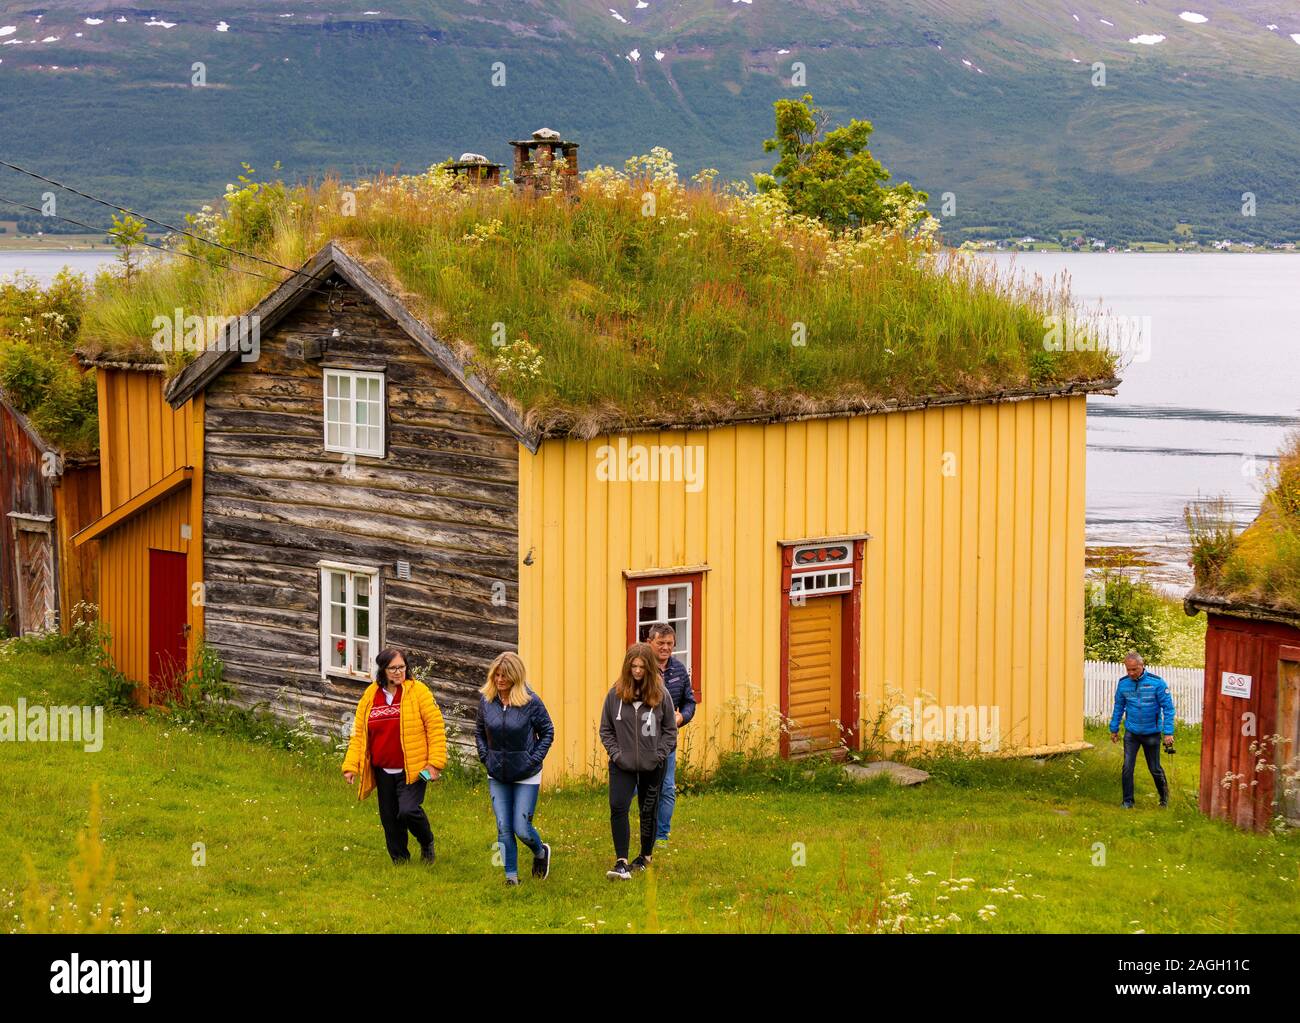 L'ÎLE DE KVALØYA, STRAUMSBUKTA, comté de Troms, NORVÈGE - Touristes au musée historique village de Straumen Gård avec toit gazon bâtiments. Toit de chaume est tradit Banque D'Images